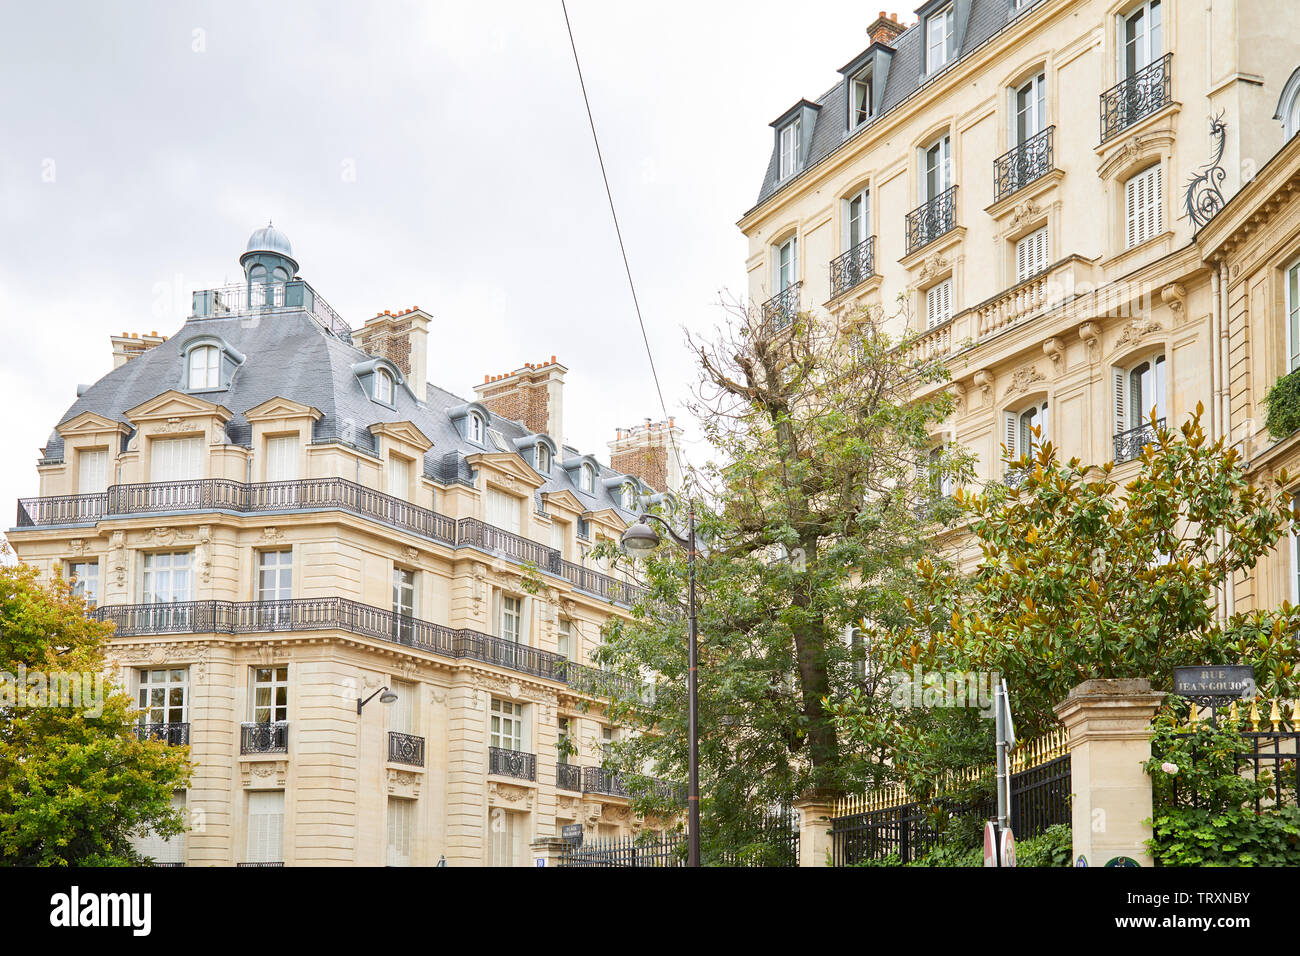 PARIS, FRANCE - 22 juillet 2017 : l'ancienne façade des bâtiments de luxe avec des arbres et des balustrades avec points d'or dans un jour nuageux à Paris, France Banque D'Images